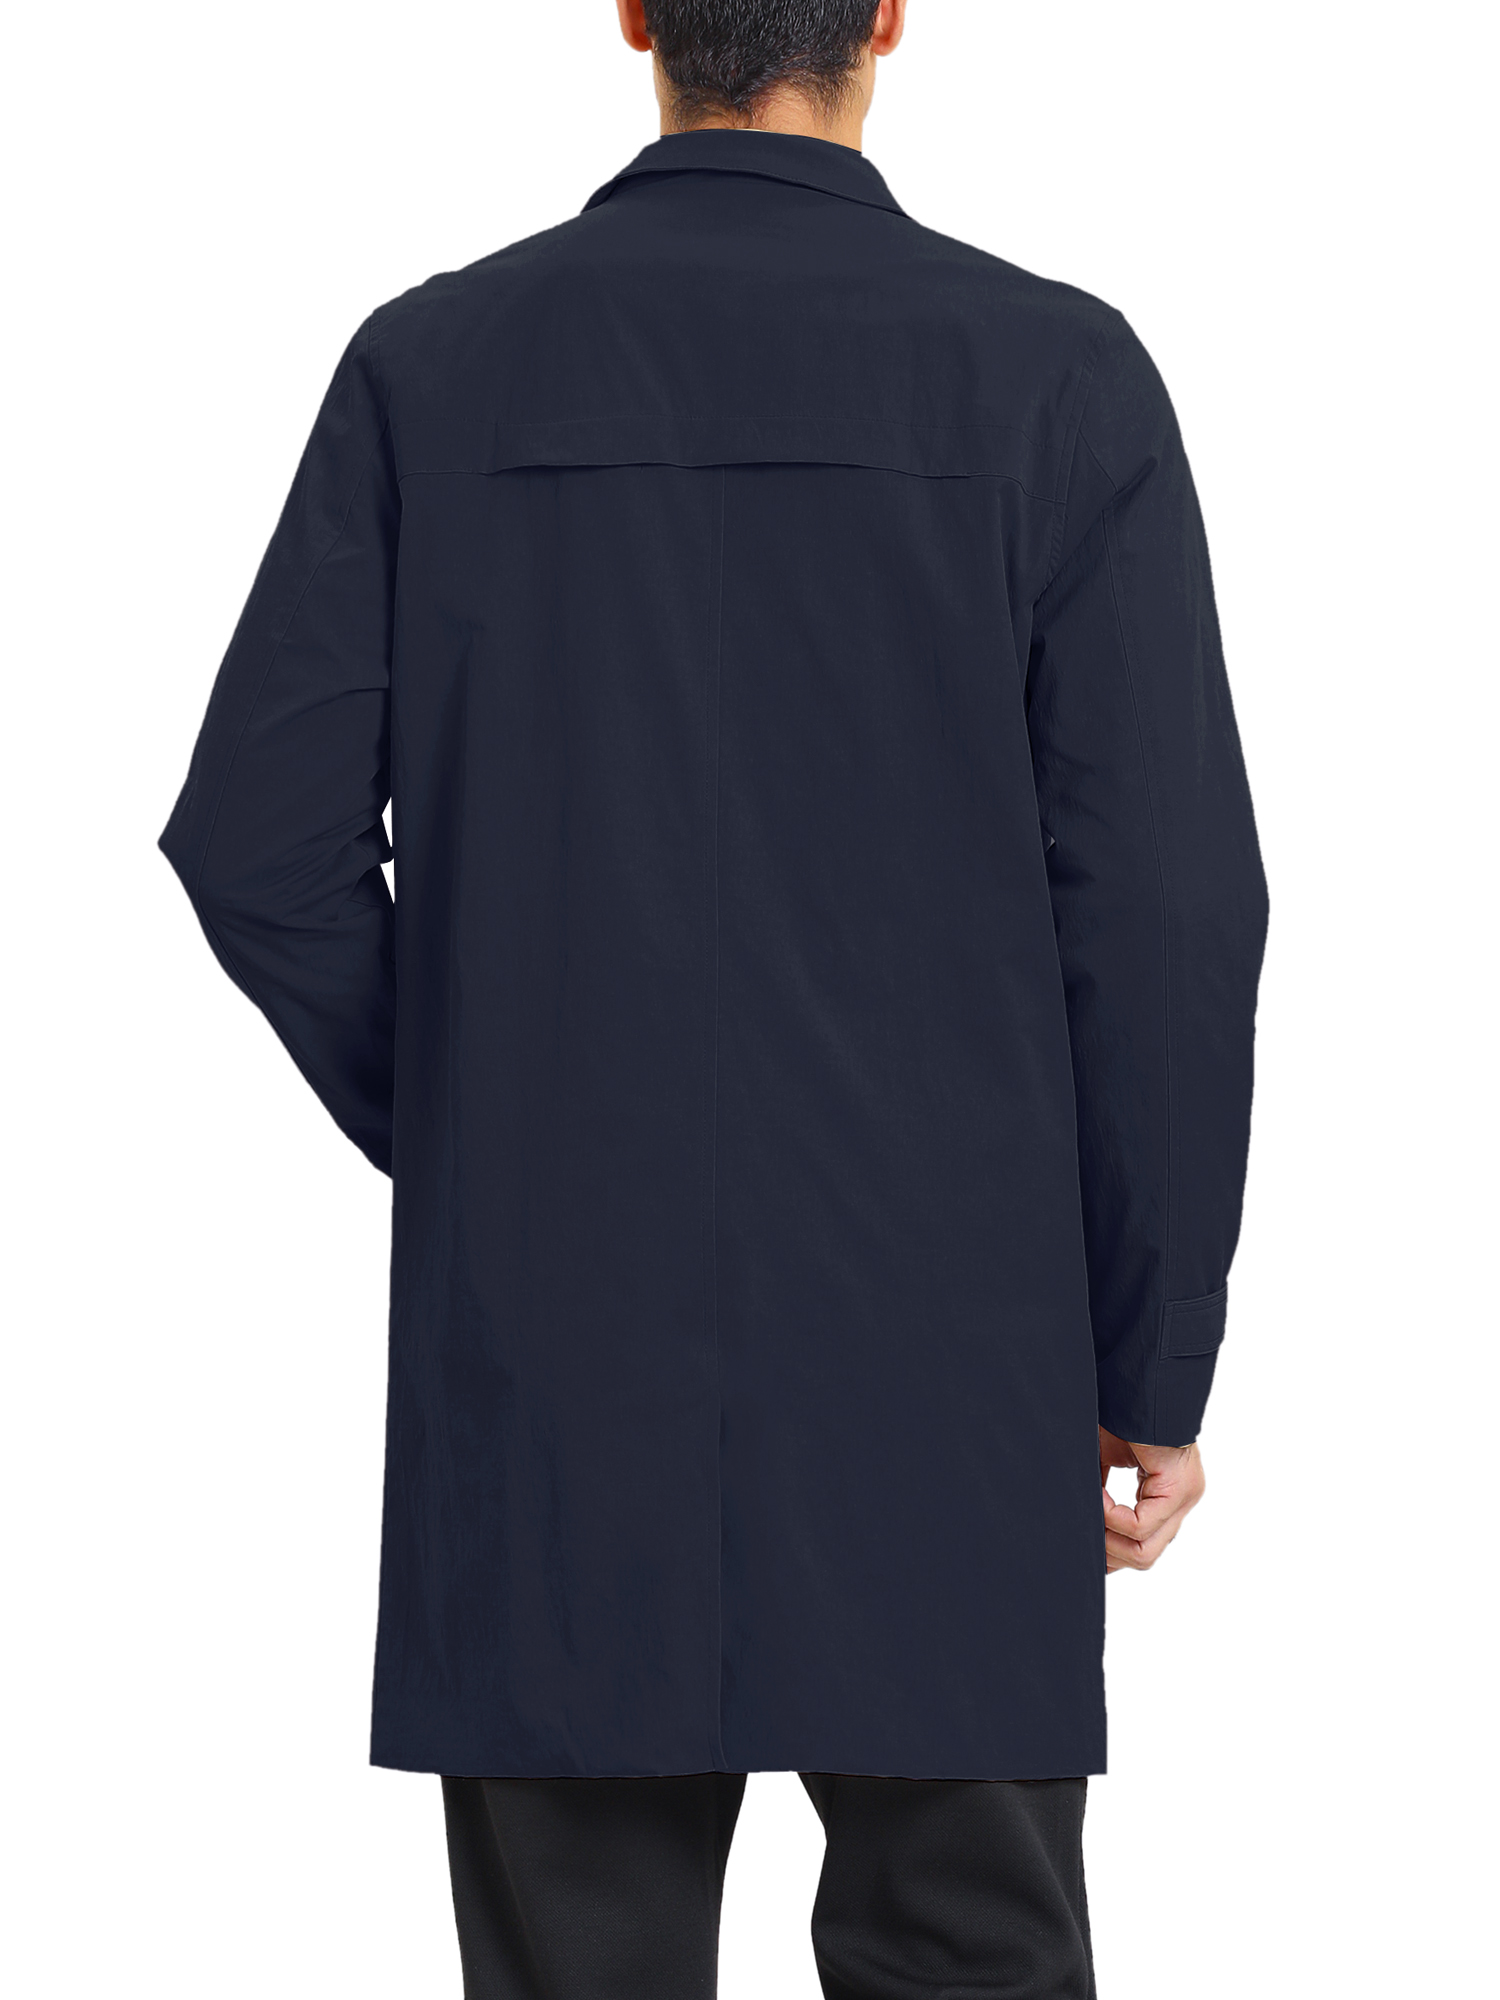 MODA NOVA Big & Tall Men's Trench Coat Single Breasted Jacket Overcoat Navy Blue XLT - image 3 of 6